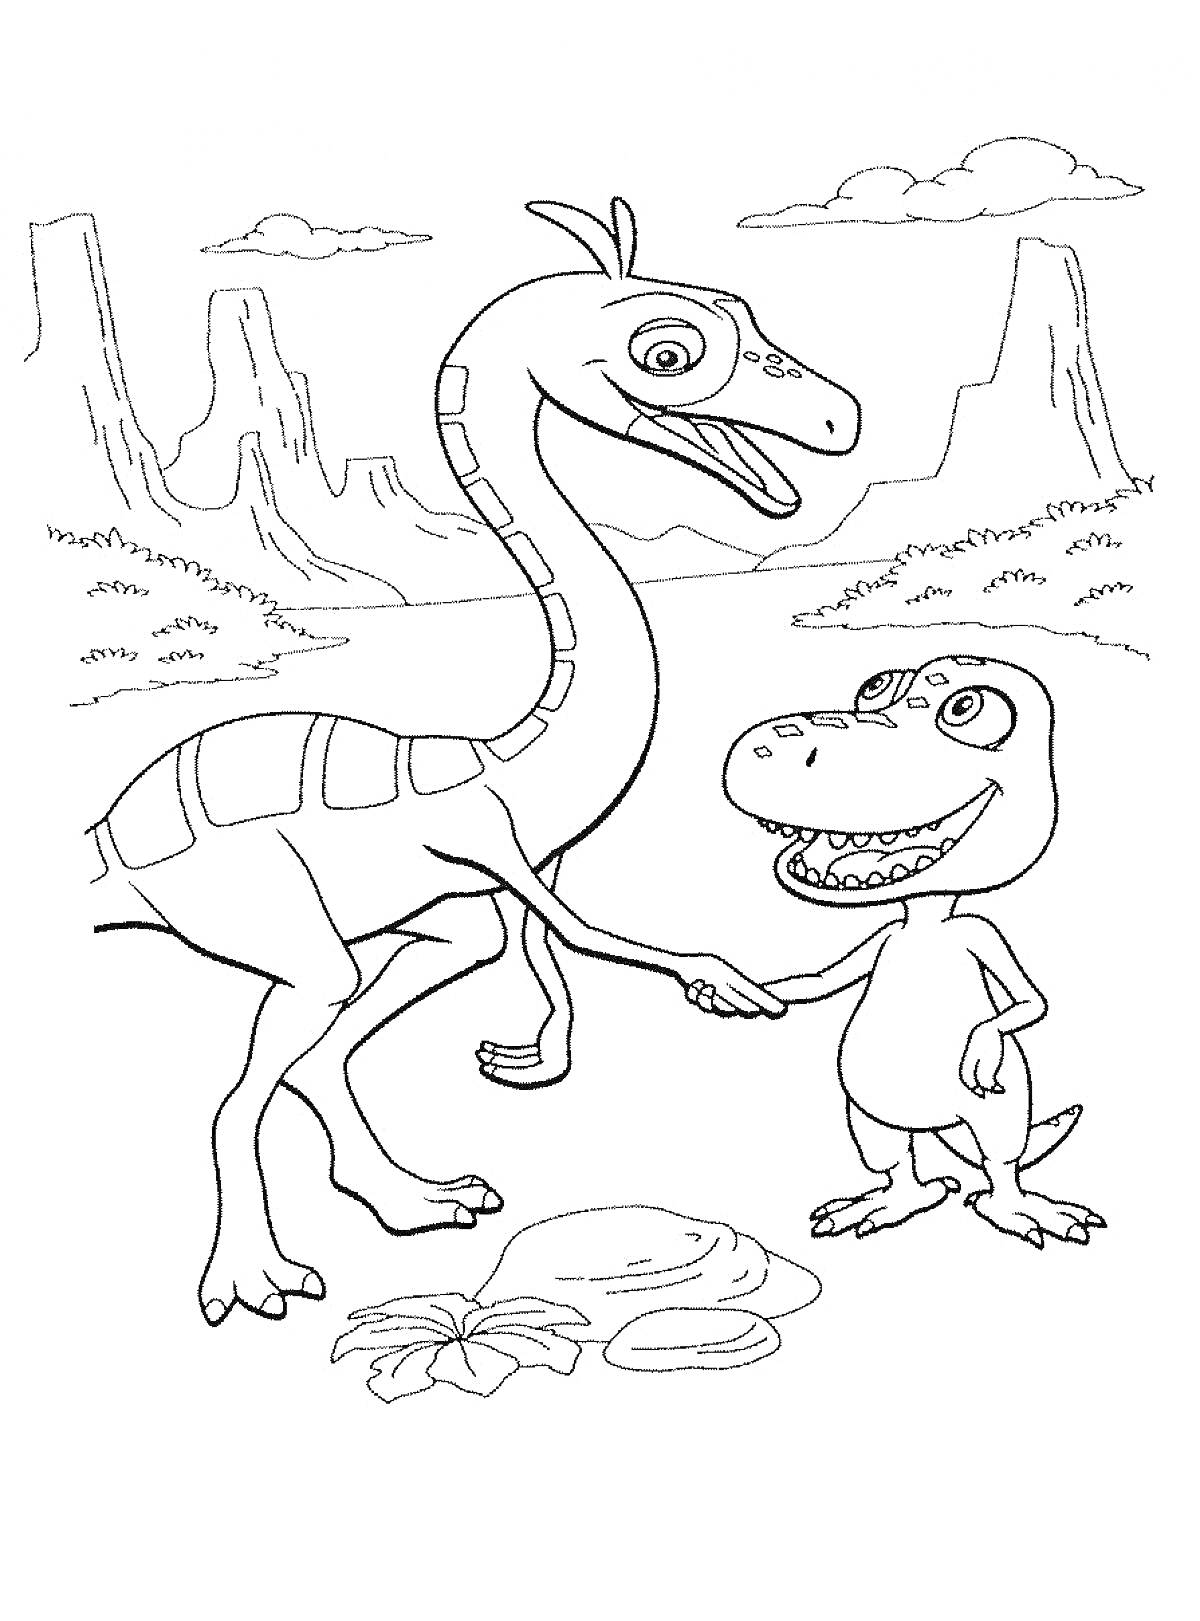 Раскраска Два динозавра (теропод и зауропод), пожимающие друг другу руки на фоне горного пейзажа